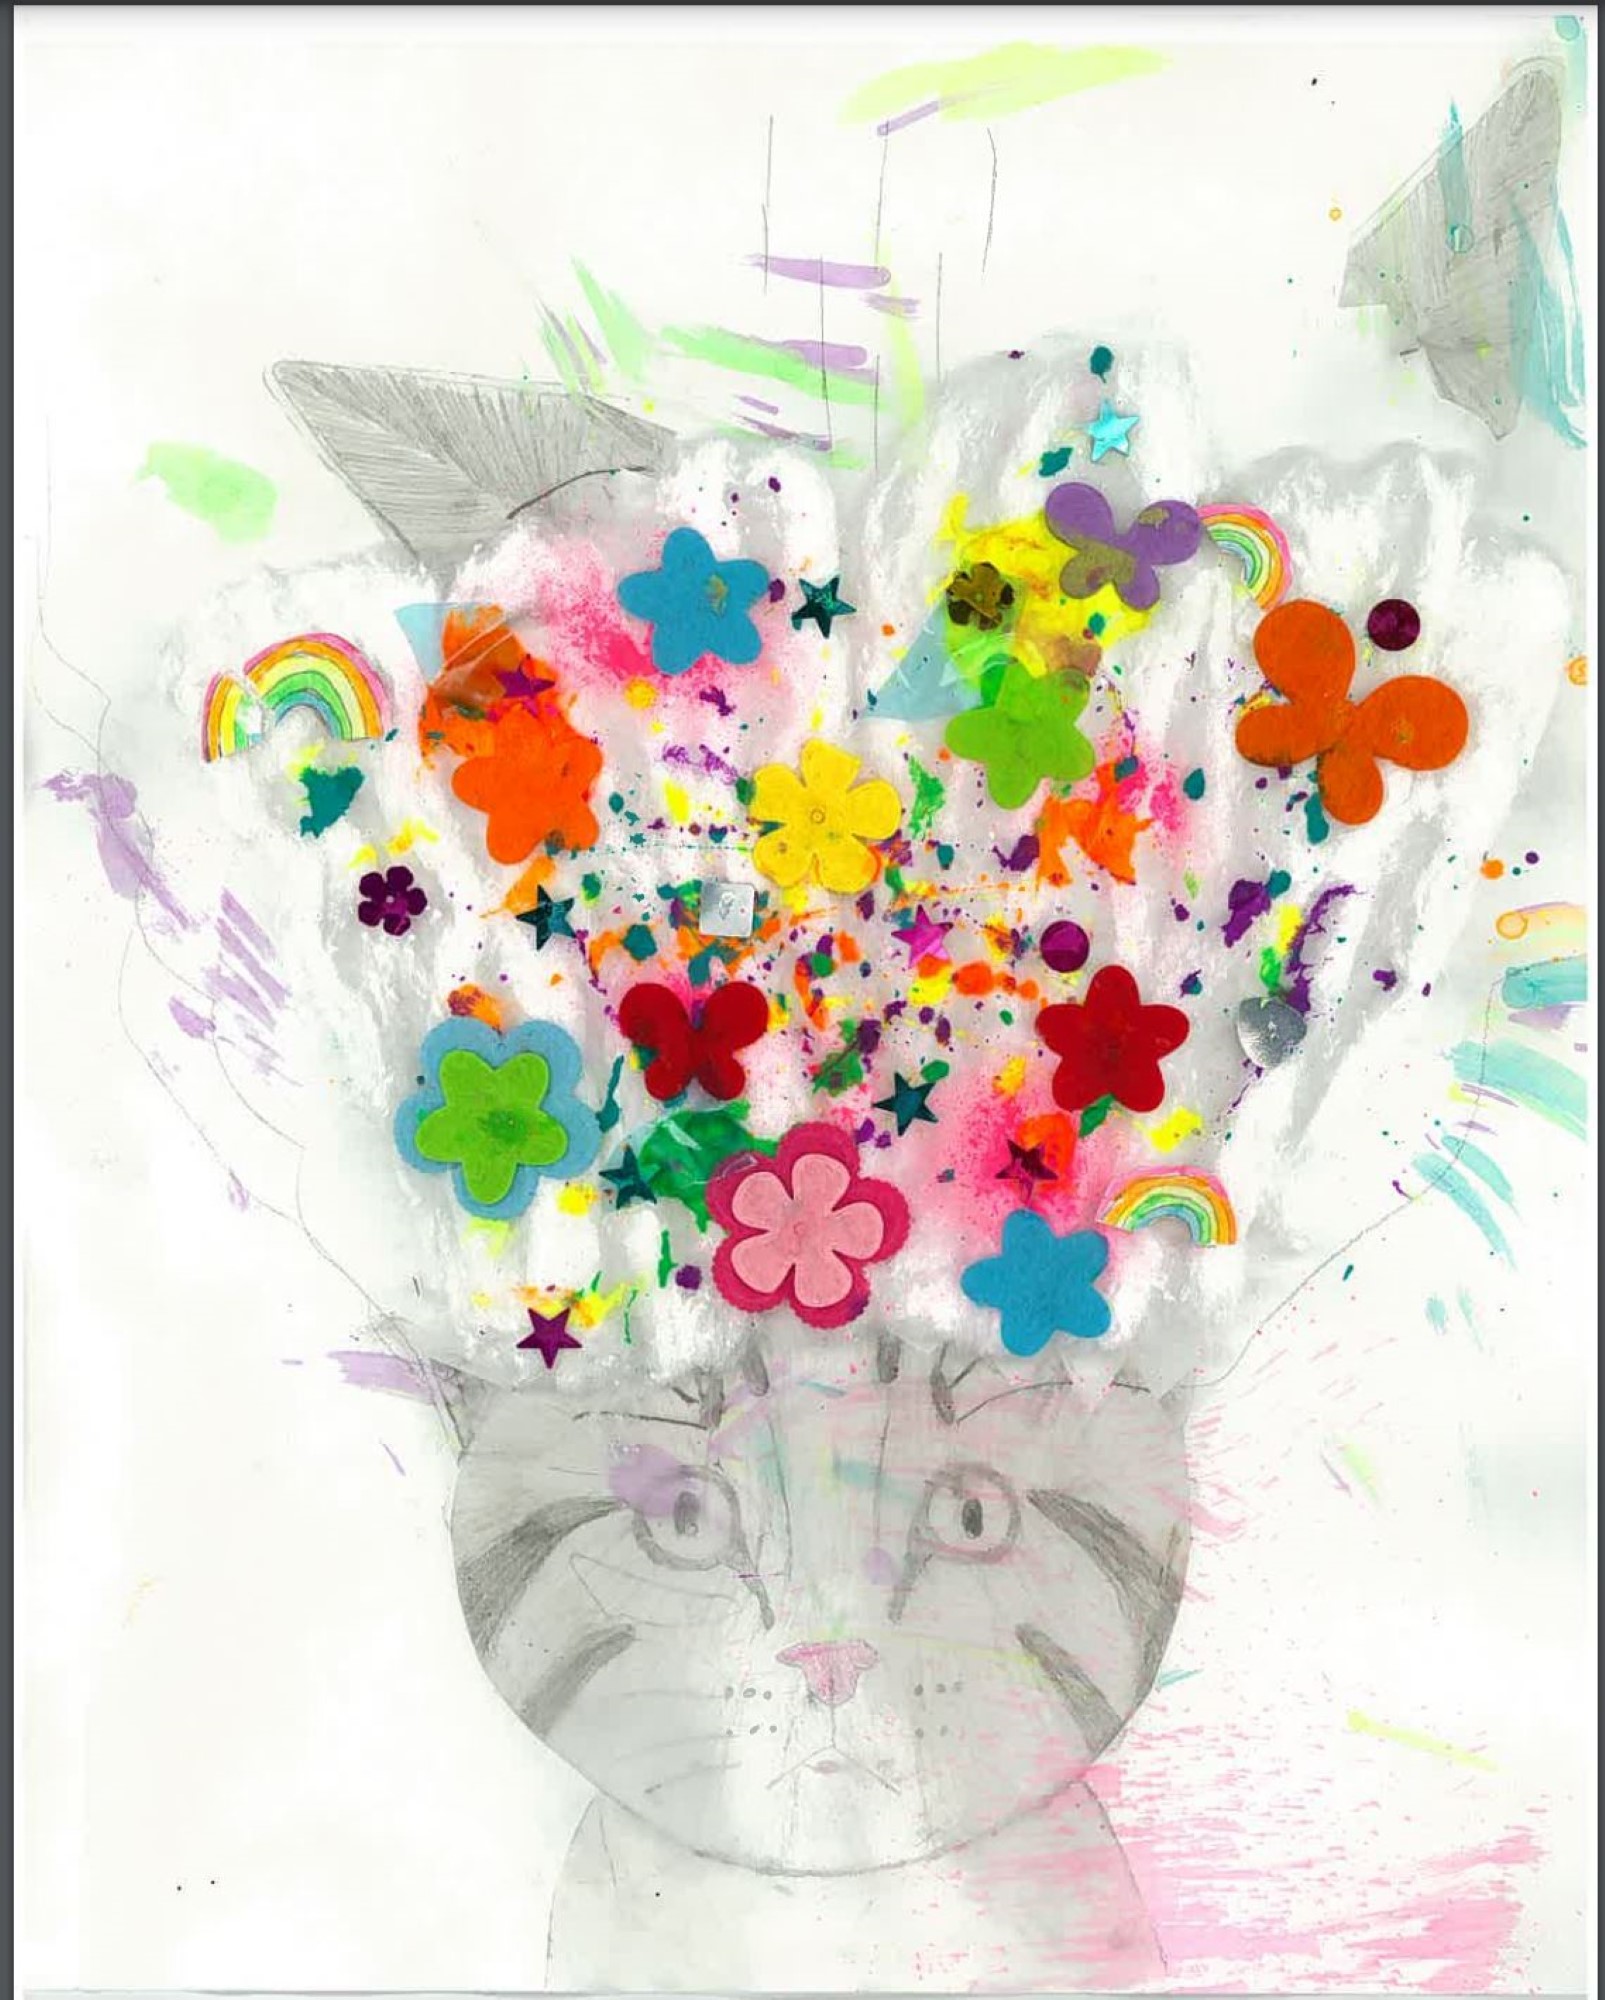 student artwork - Exploding cat